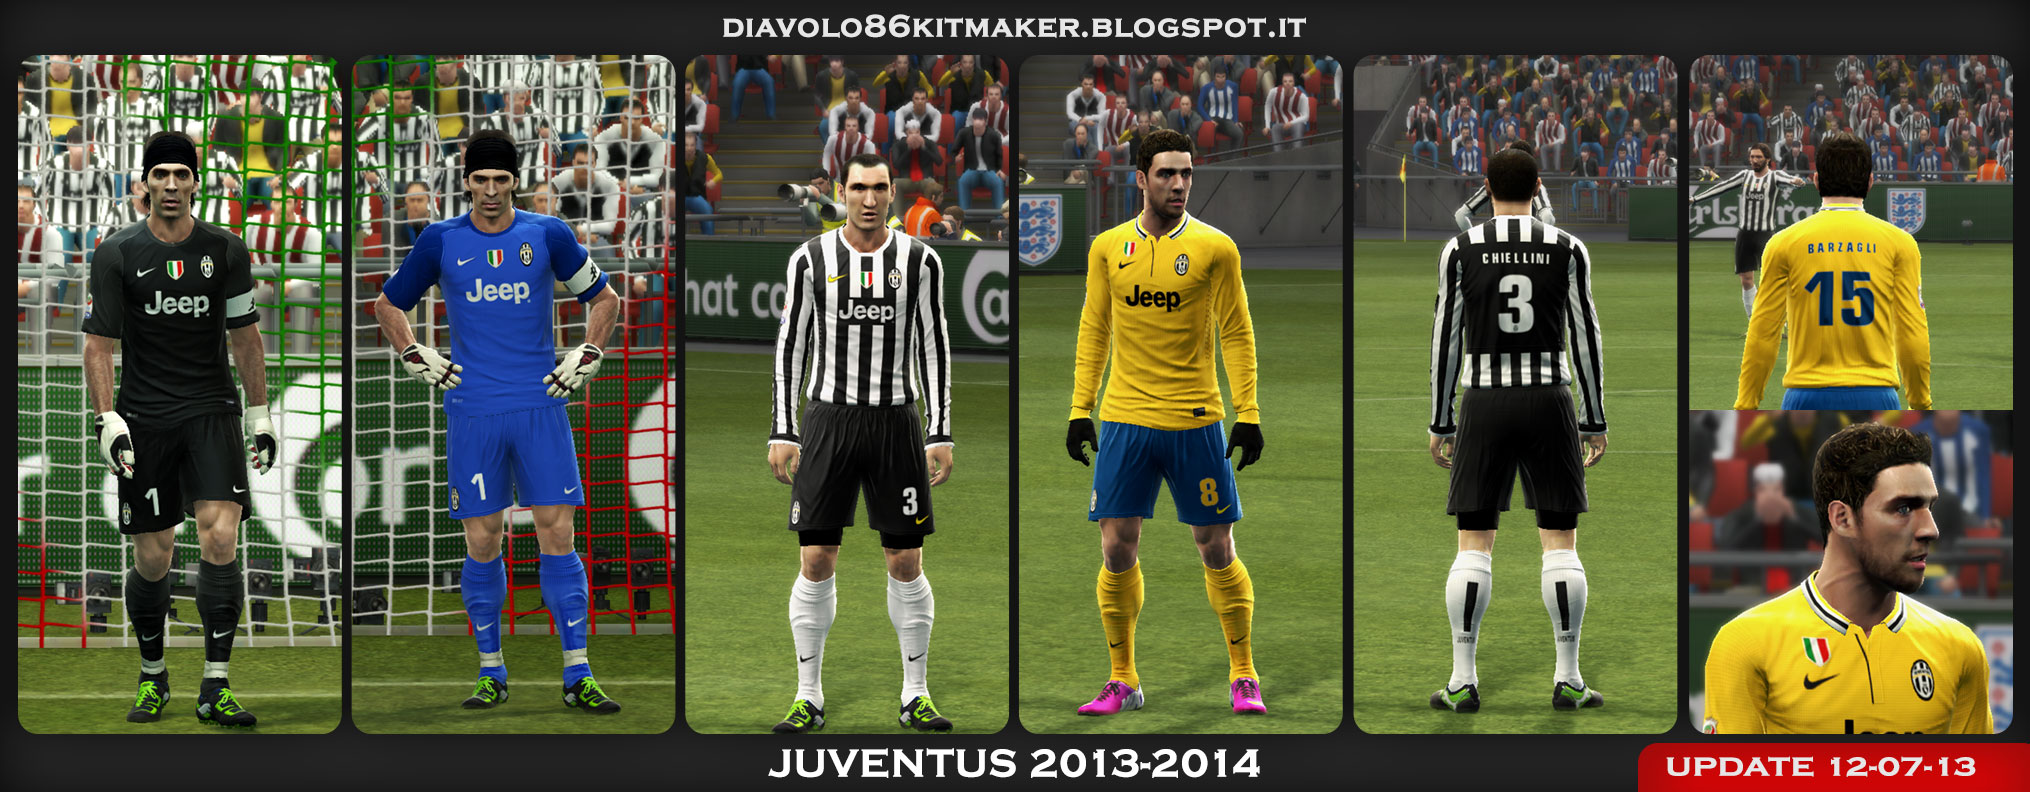 Juventus 2013 2014 Kits File Mod Db